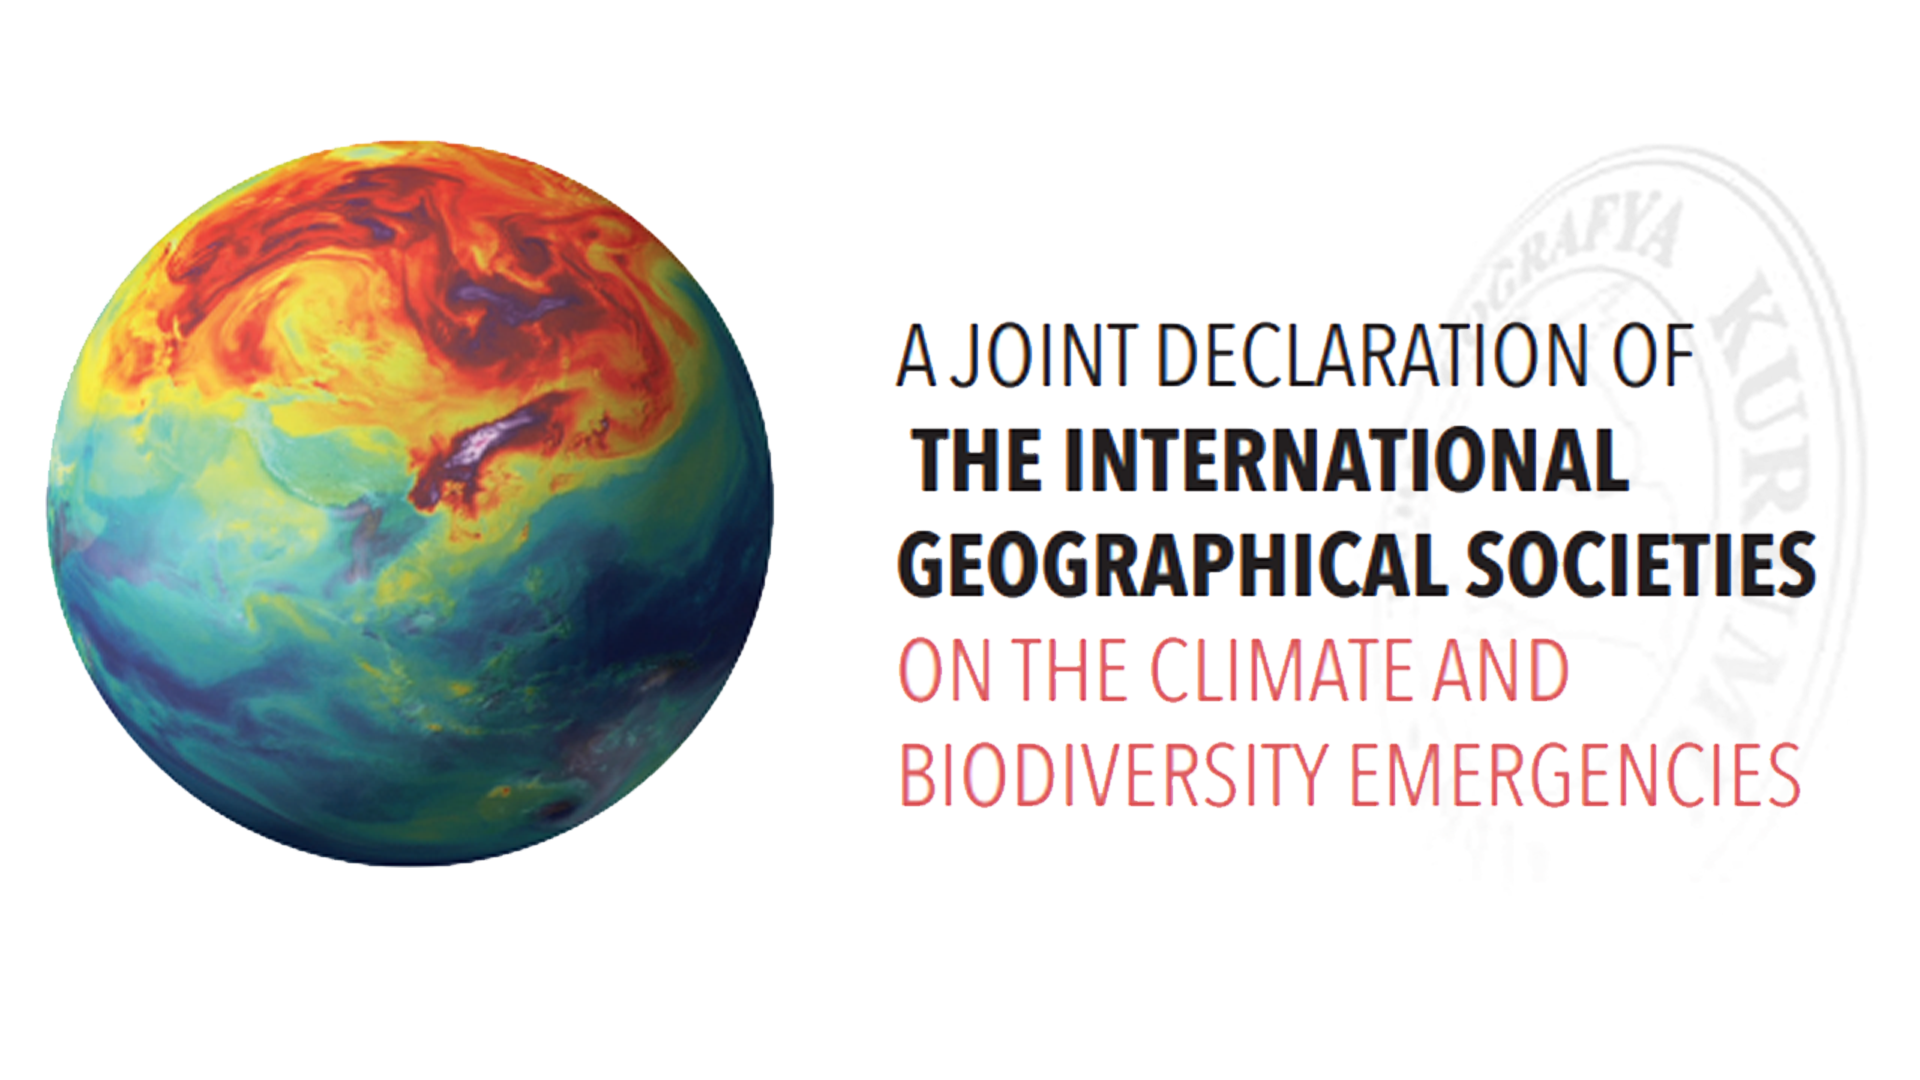 İklim ve Biyoçeşitlilikteki Acil Durumlar Üzerine Uluslararası Coğrafya Topluluklarından Ortak Bildiri